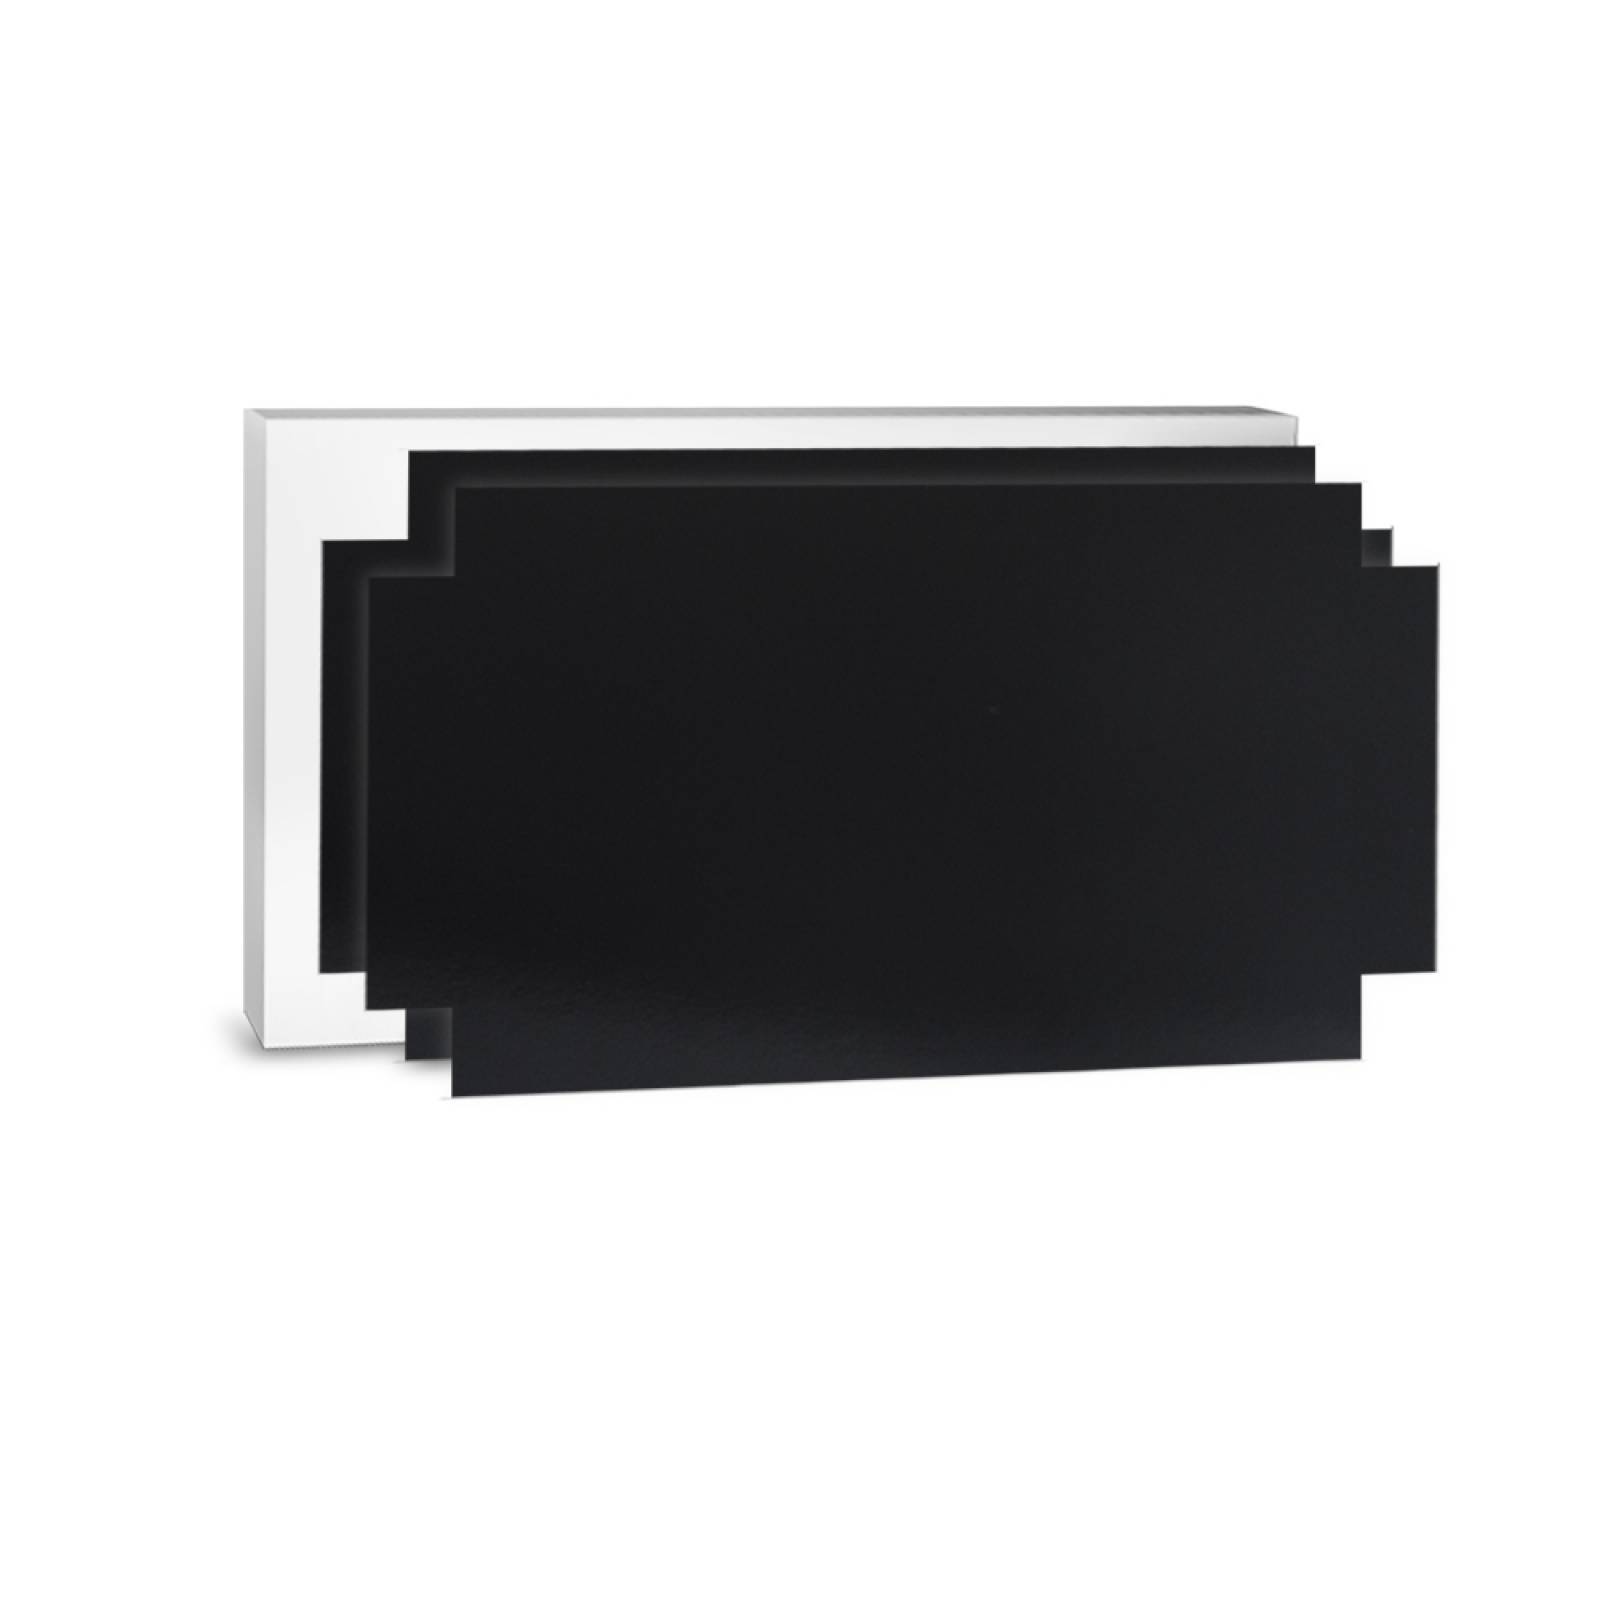 Aislante Cerámico Protector Térmico para Pared de 52 x 20 cm Negro, Paquete 3 Piezas, Mod: 3PTPP3Ne